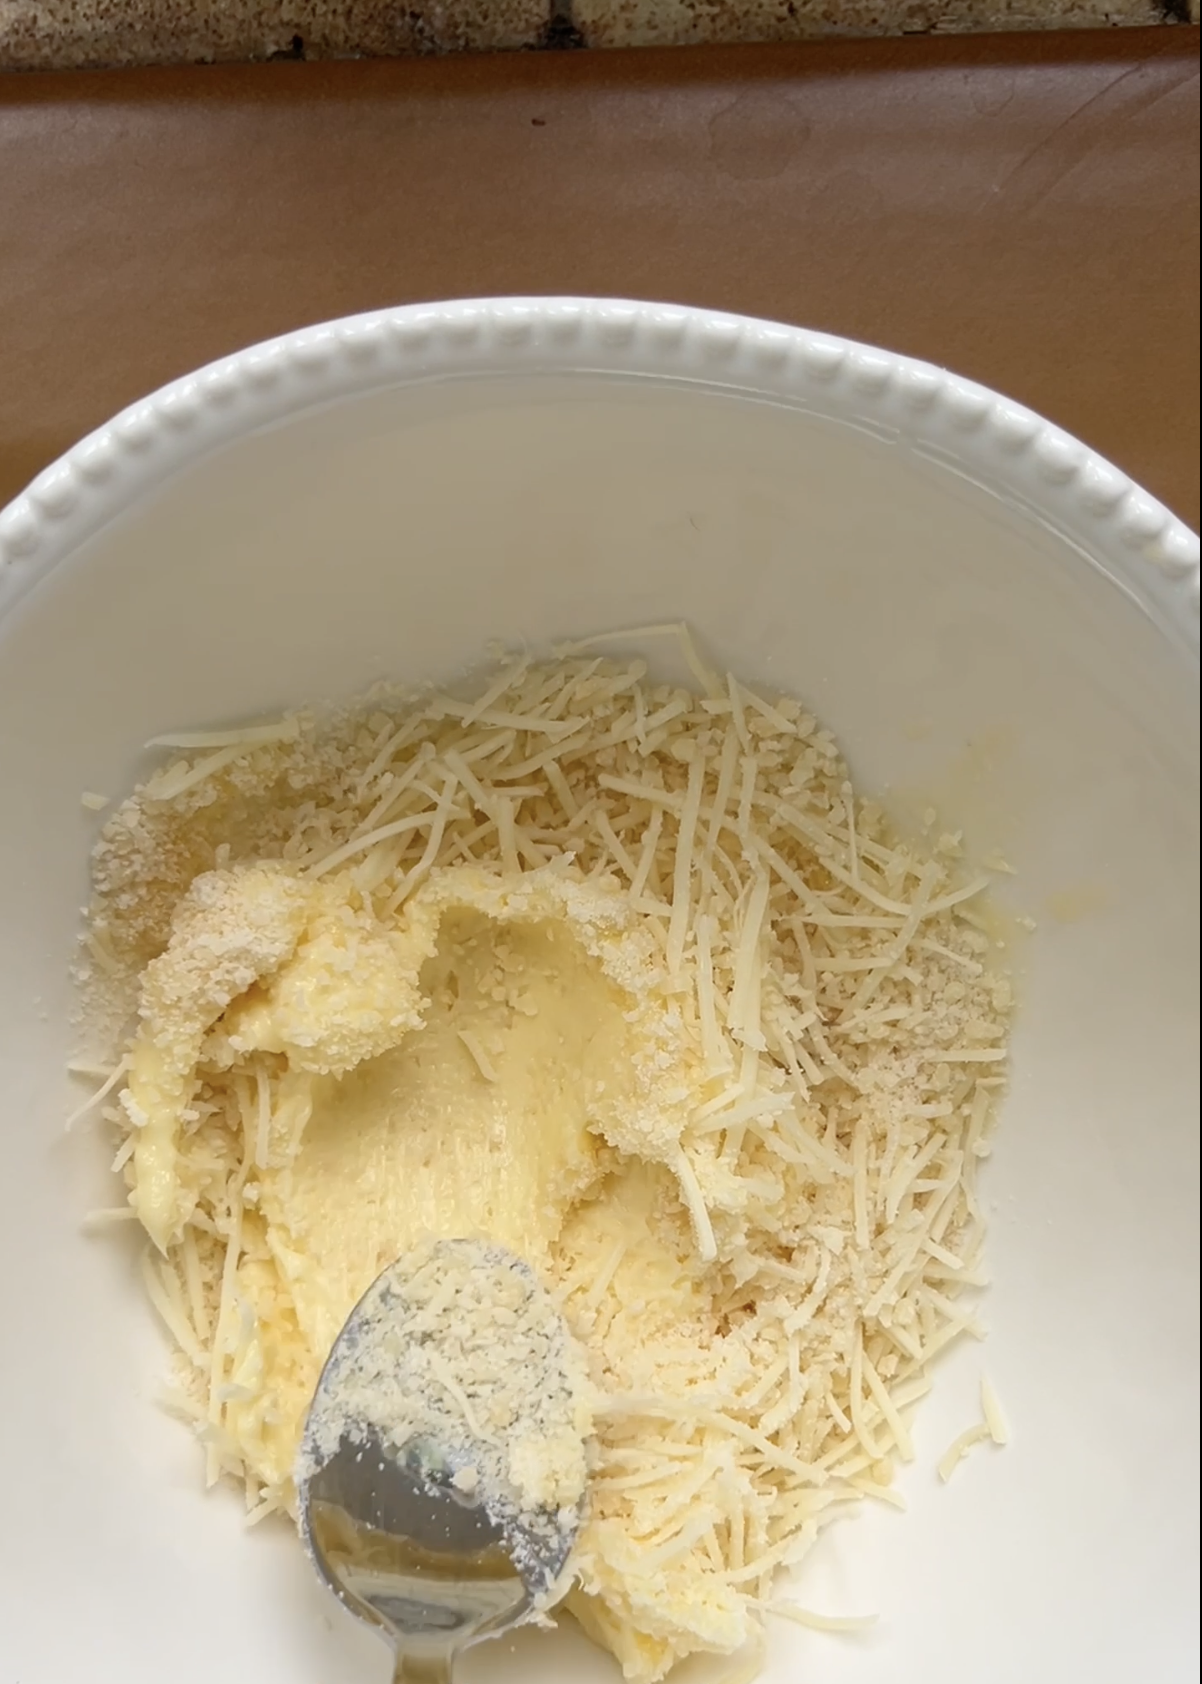 Beurre mou, Parmesan et gruyère râpés dans un grand bol blanc, mélangés par une cuillère à soupe.